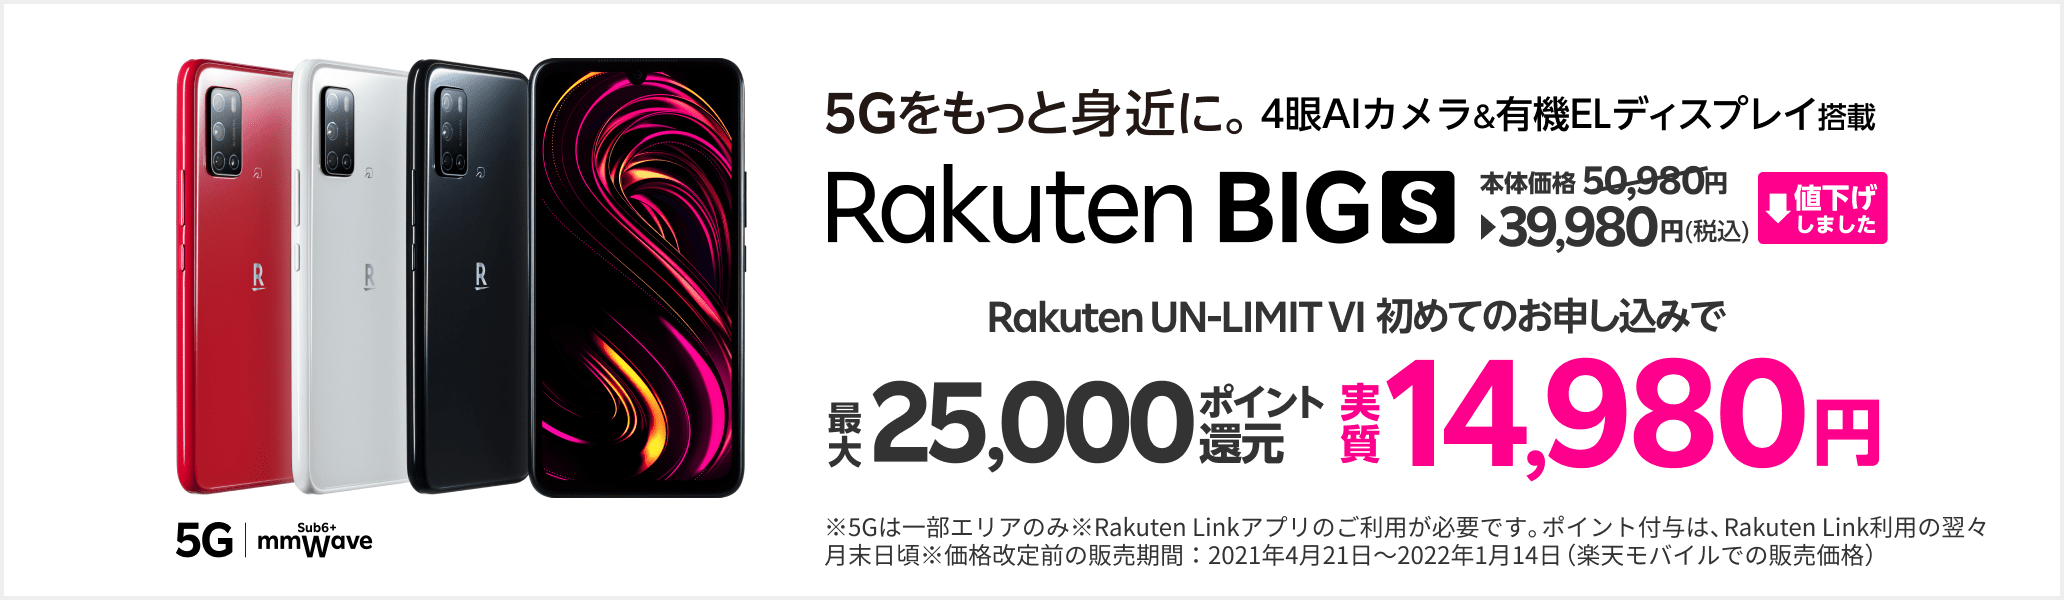 5Gをもっと身近に Rakuten BIGs